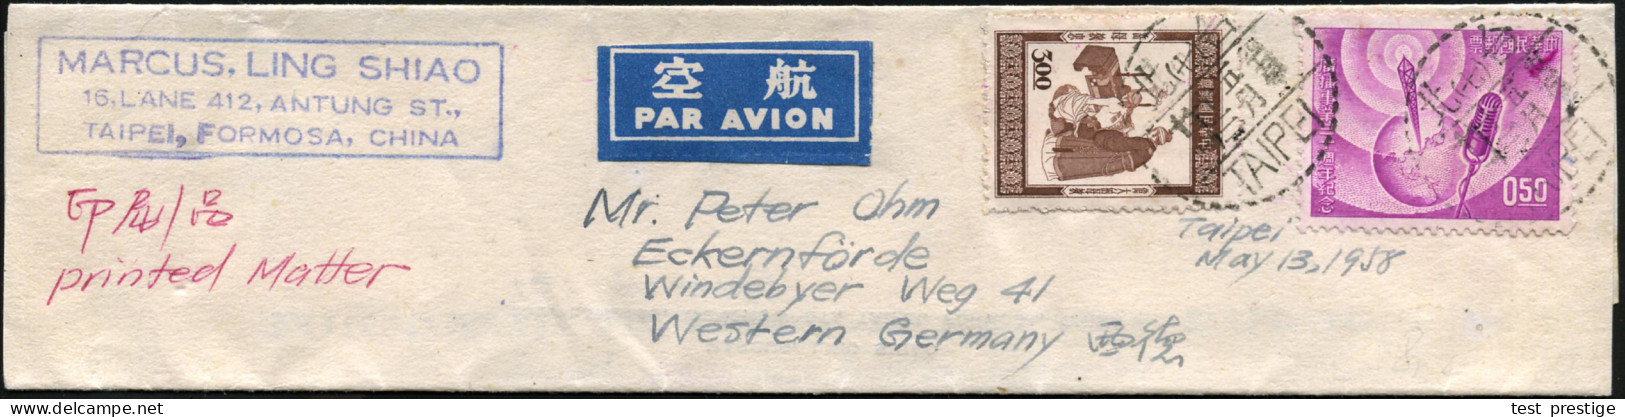 CHINA (TAIWAN) REP. 1958 50 C. "30 Jahre Chinesischer Rundfunk" U.a., Sauber Gest. Miniatur-Flp.-Streifband N. Eckernför - Other